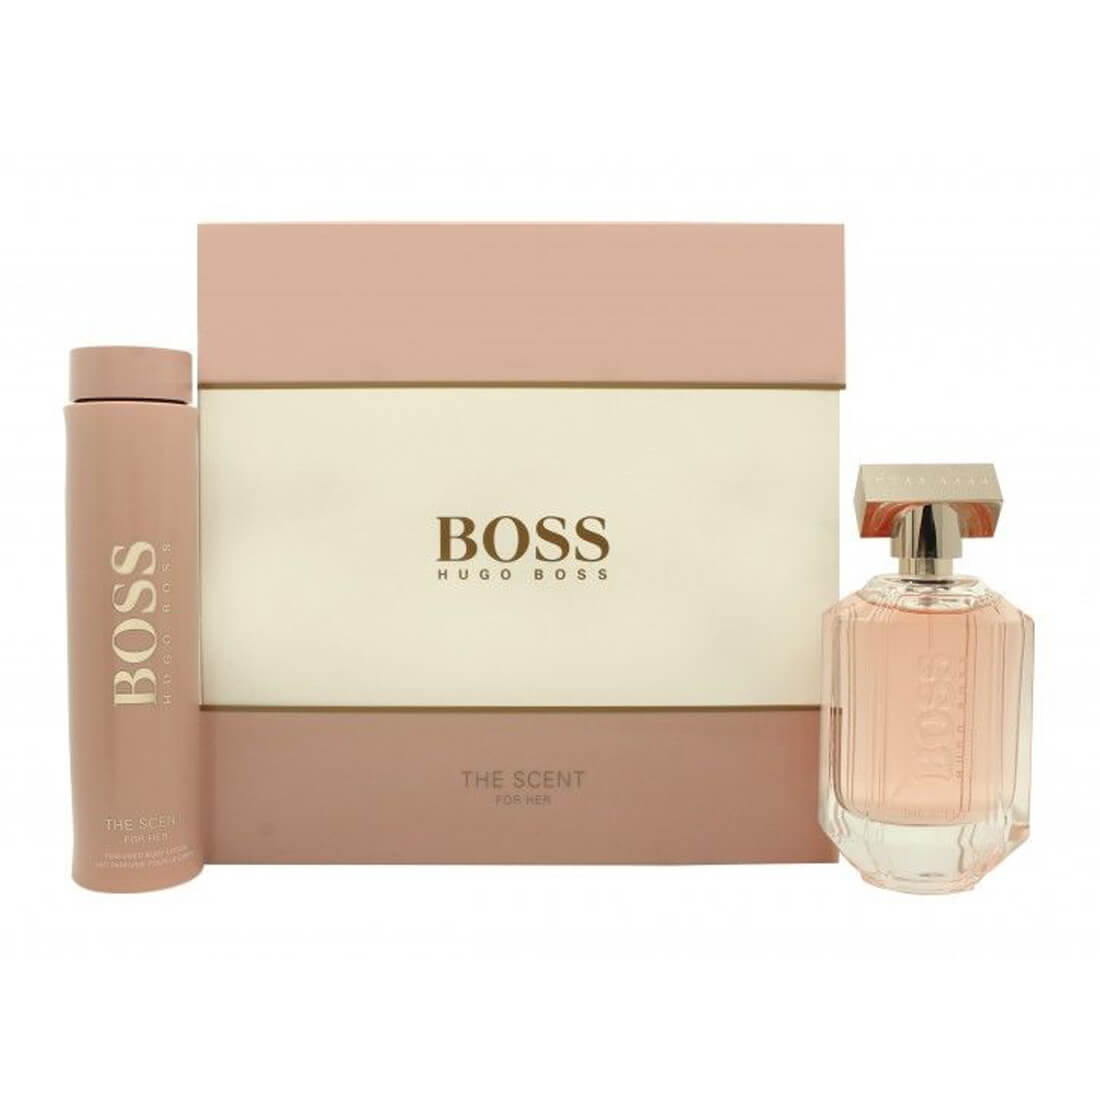 hugo boss the scent gift